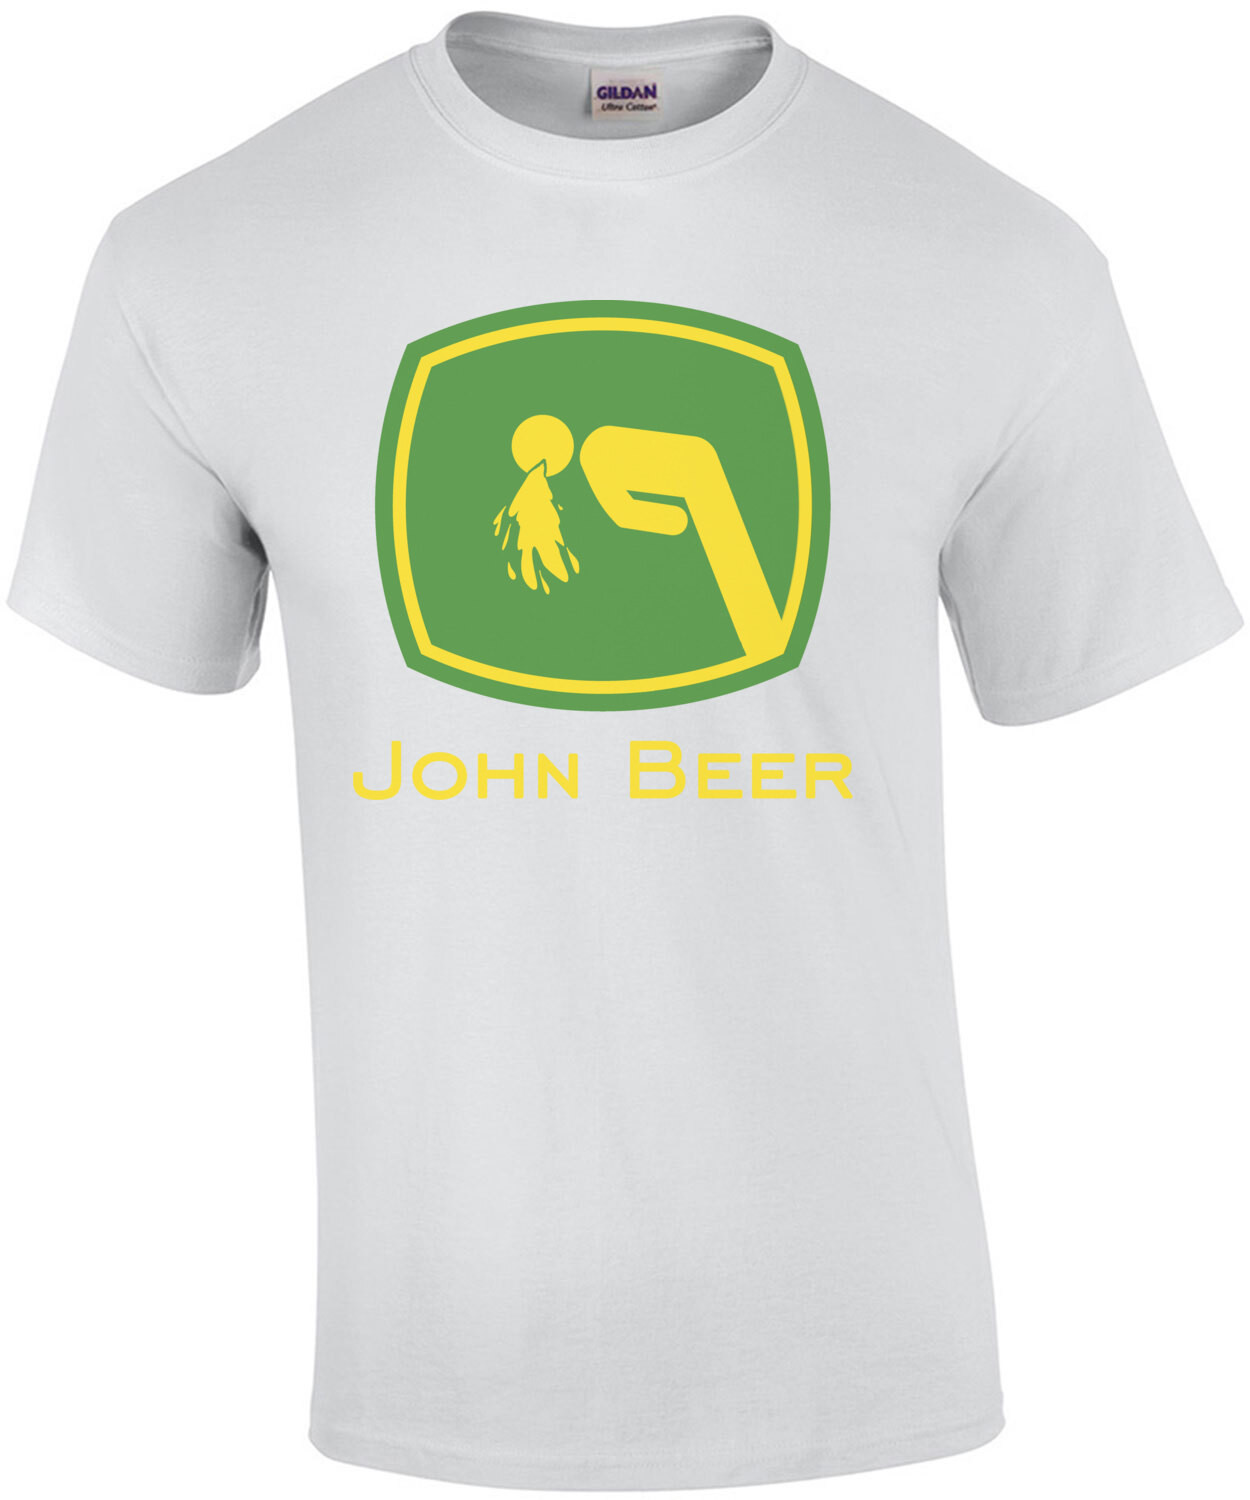 John Beer Funny Drinking Shirt